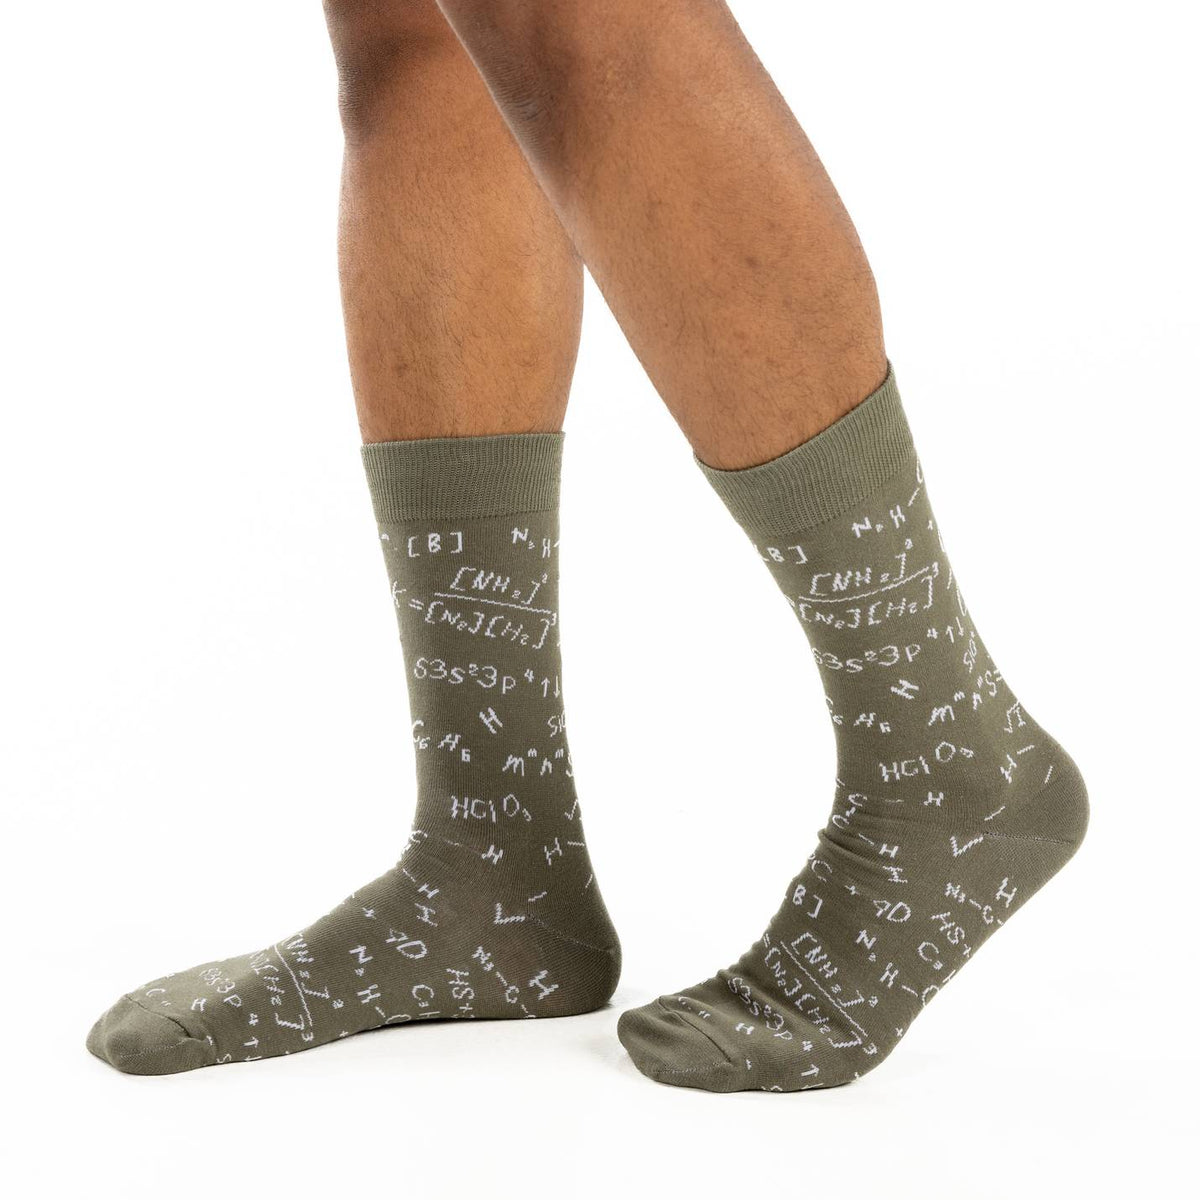 Men's Math Equations Underwear – Good Luck Sock